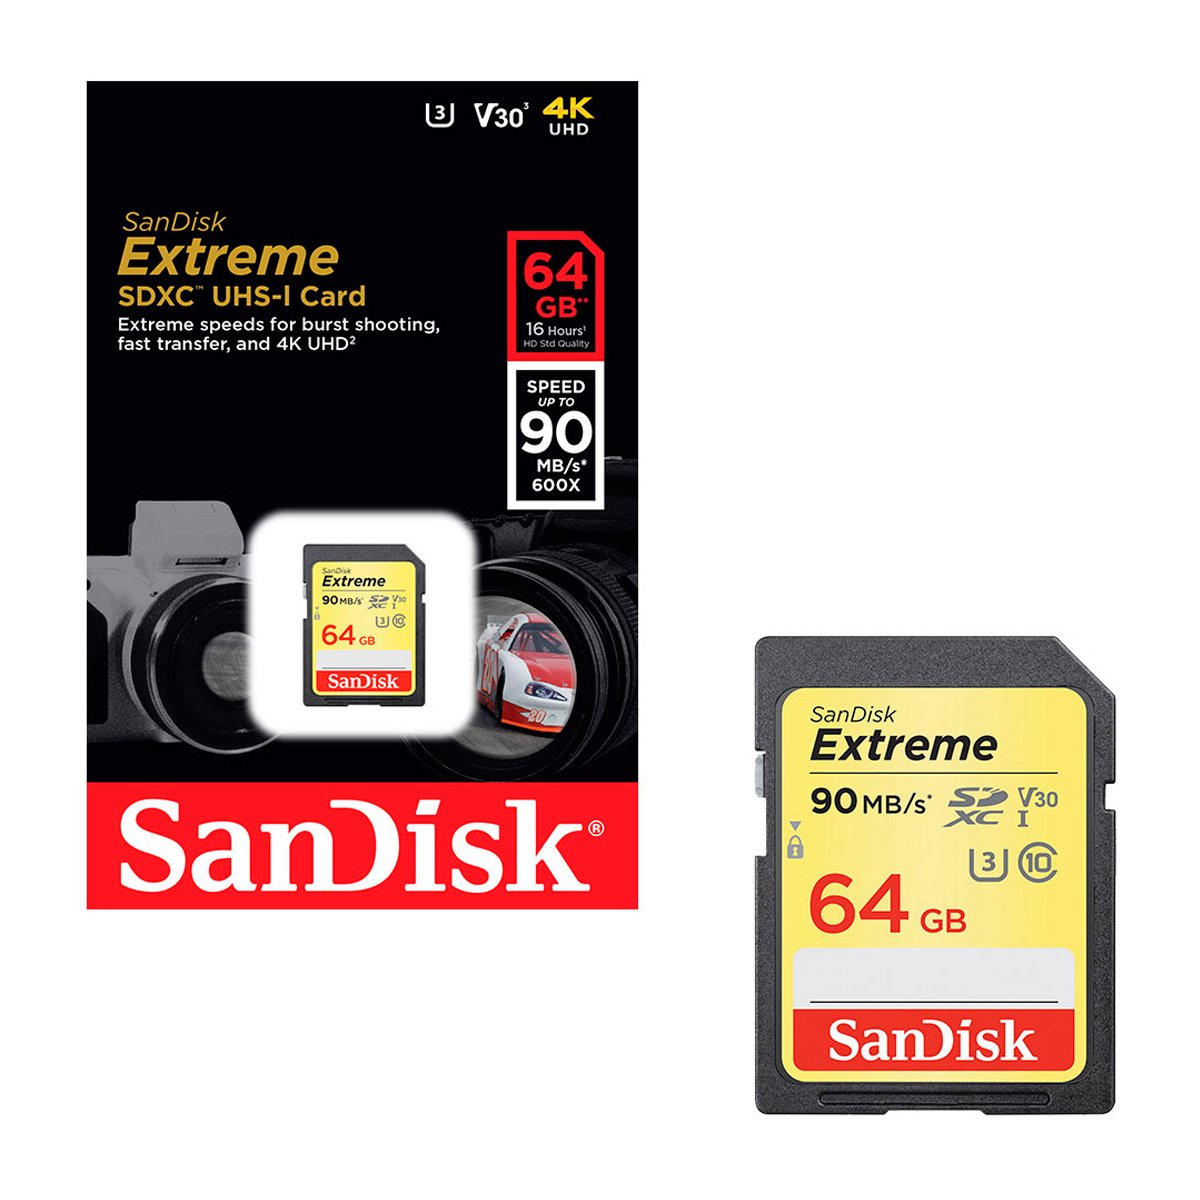 Tarjeta de Memoria 64GB SanDisk Extreme - Era Electrónica, Distribuidores  Rode, Accesorios, Audio, Video, Streaming, Fotografía